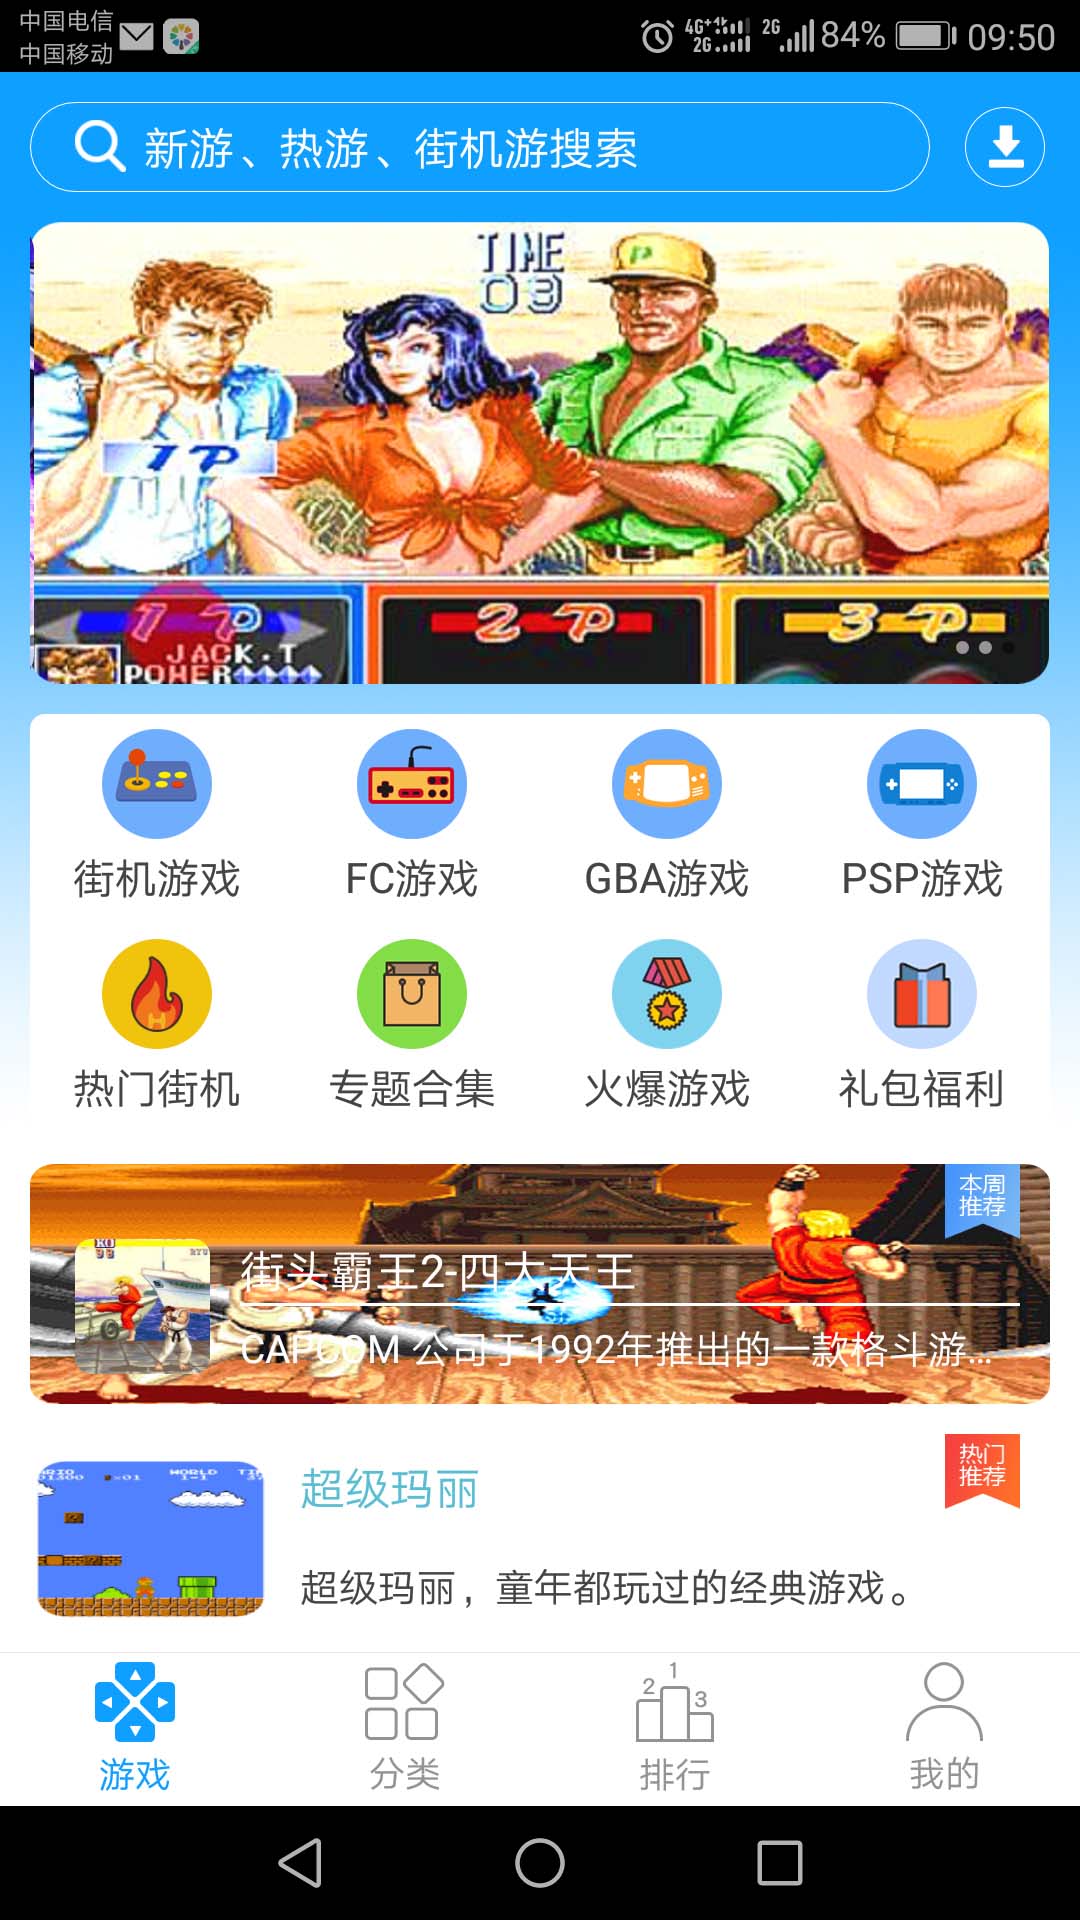 761棋乐游最新官方网站